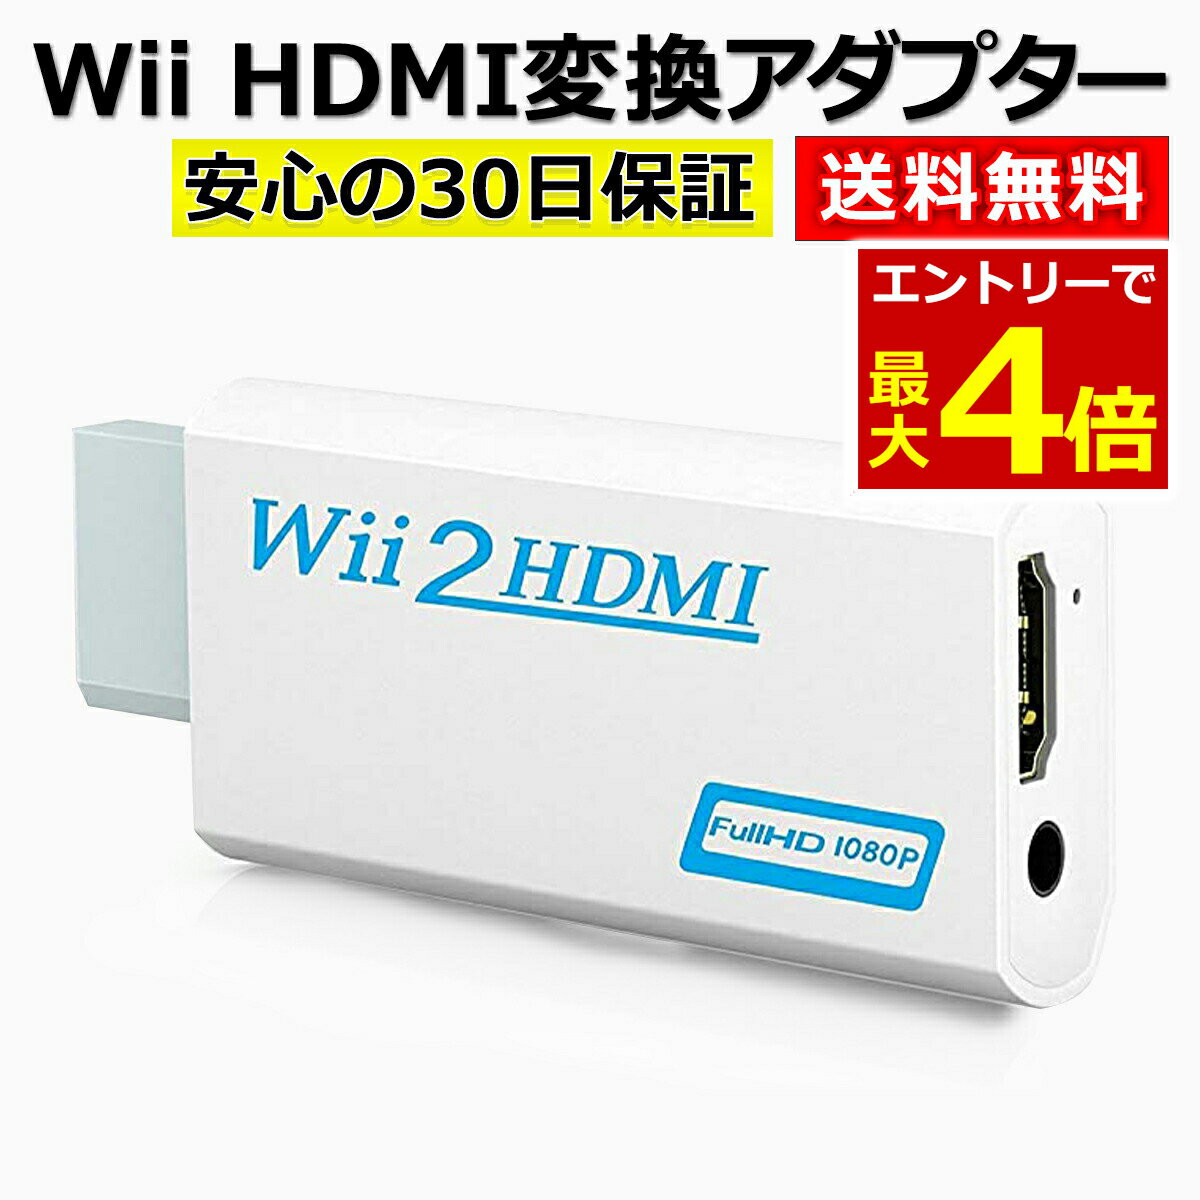 【5/18エントリー最大P4倍!】Wii HDMI 変換 アダプター コンバーター HDMI接続 ウィー 任天堂 hdmi 接続 コネクター …